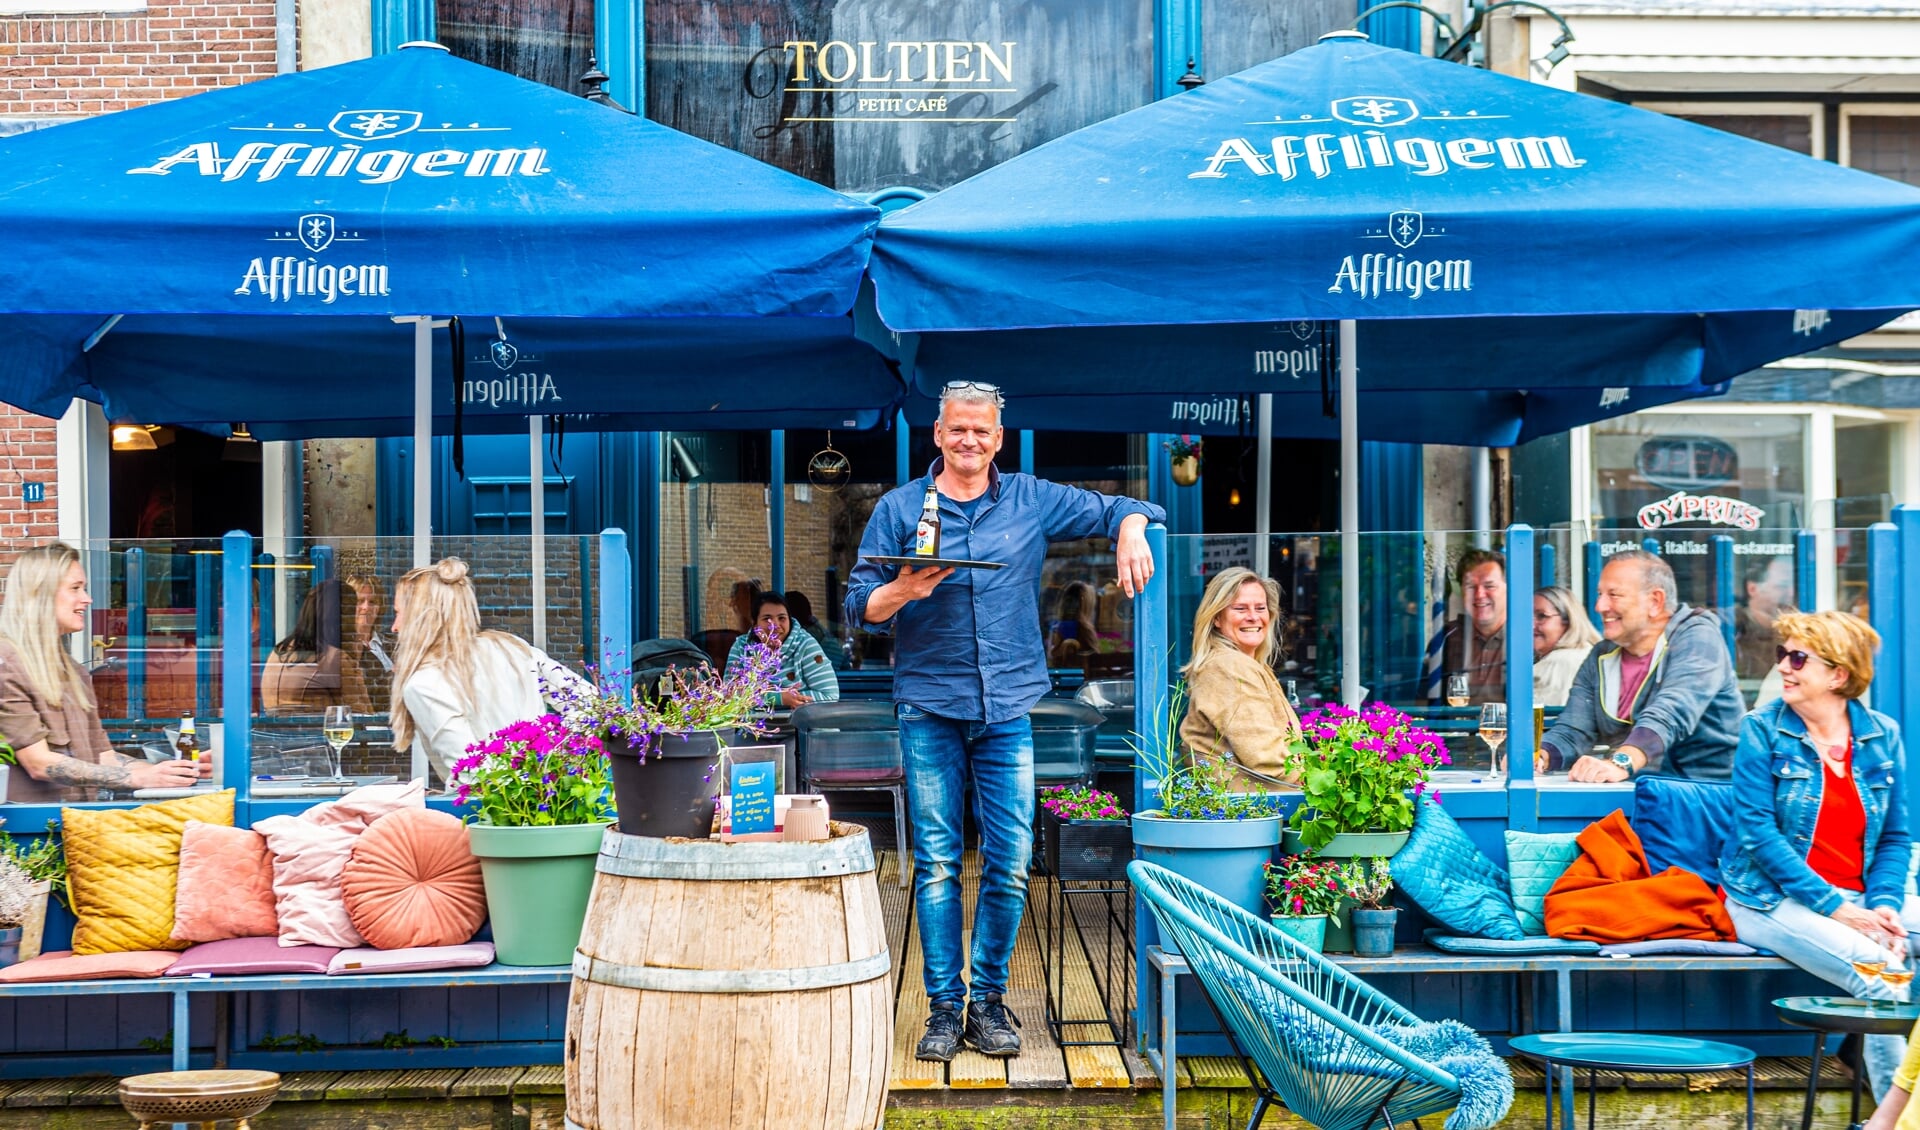 De terrassen in Schoonhoven zijn woensdagmiddag om 12.00 uur geopend. Het terras van café Toltien was ondanks de lichte bewolking al snel gevuld.